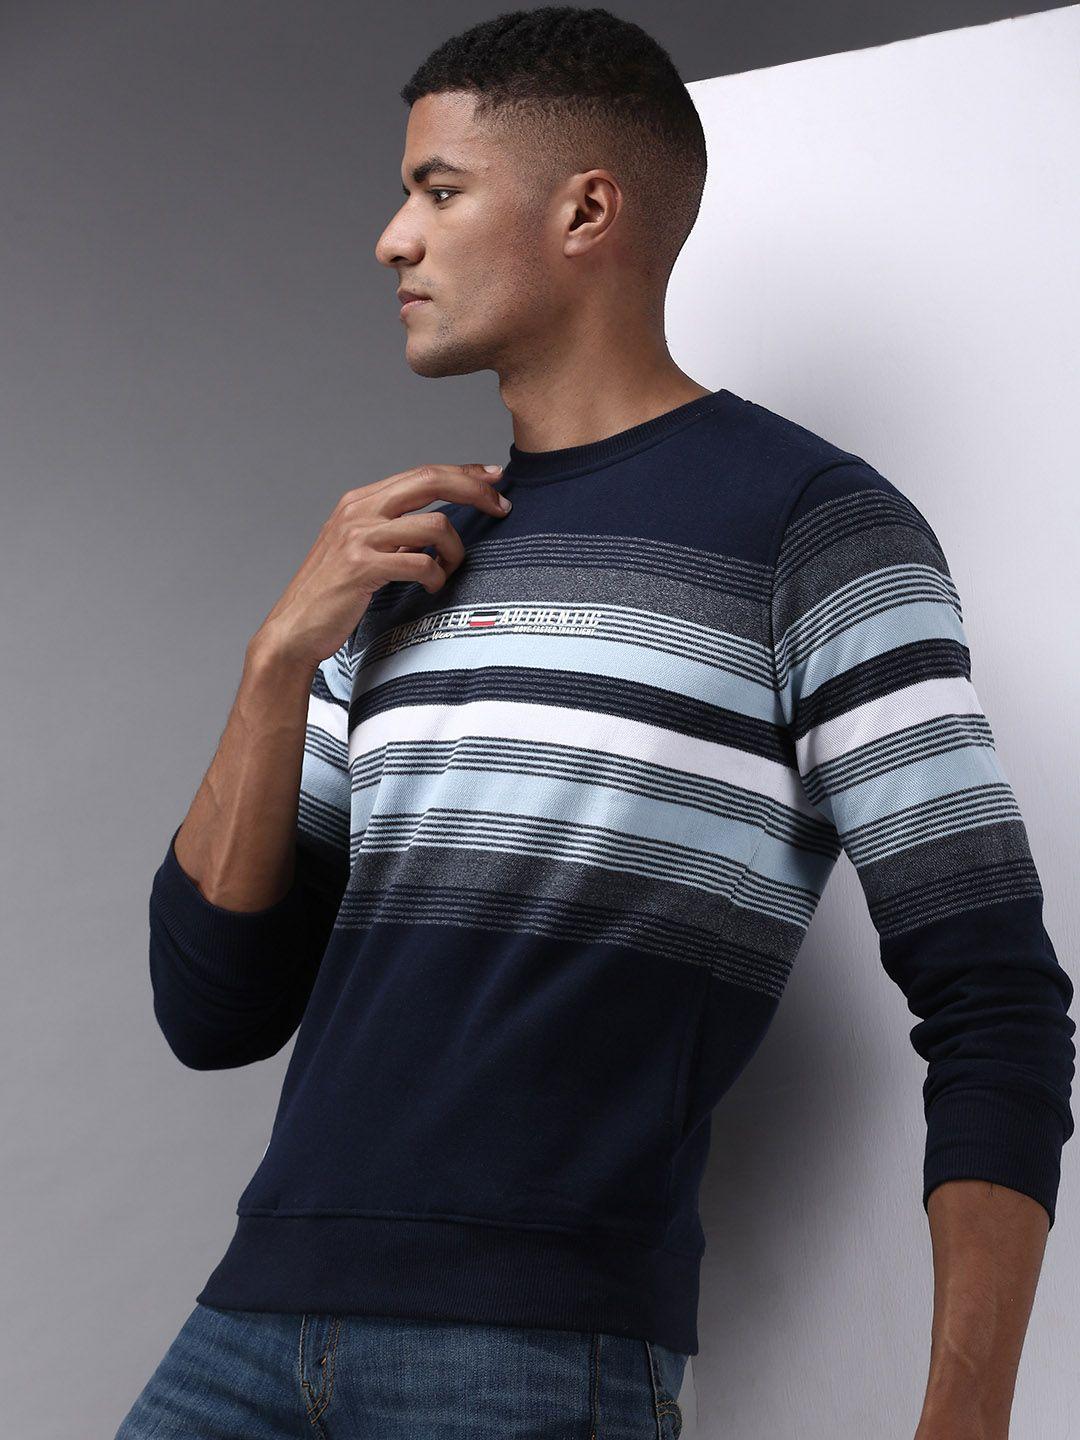 showoff-men-navy-blue-striped-cotton-sweatshirt